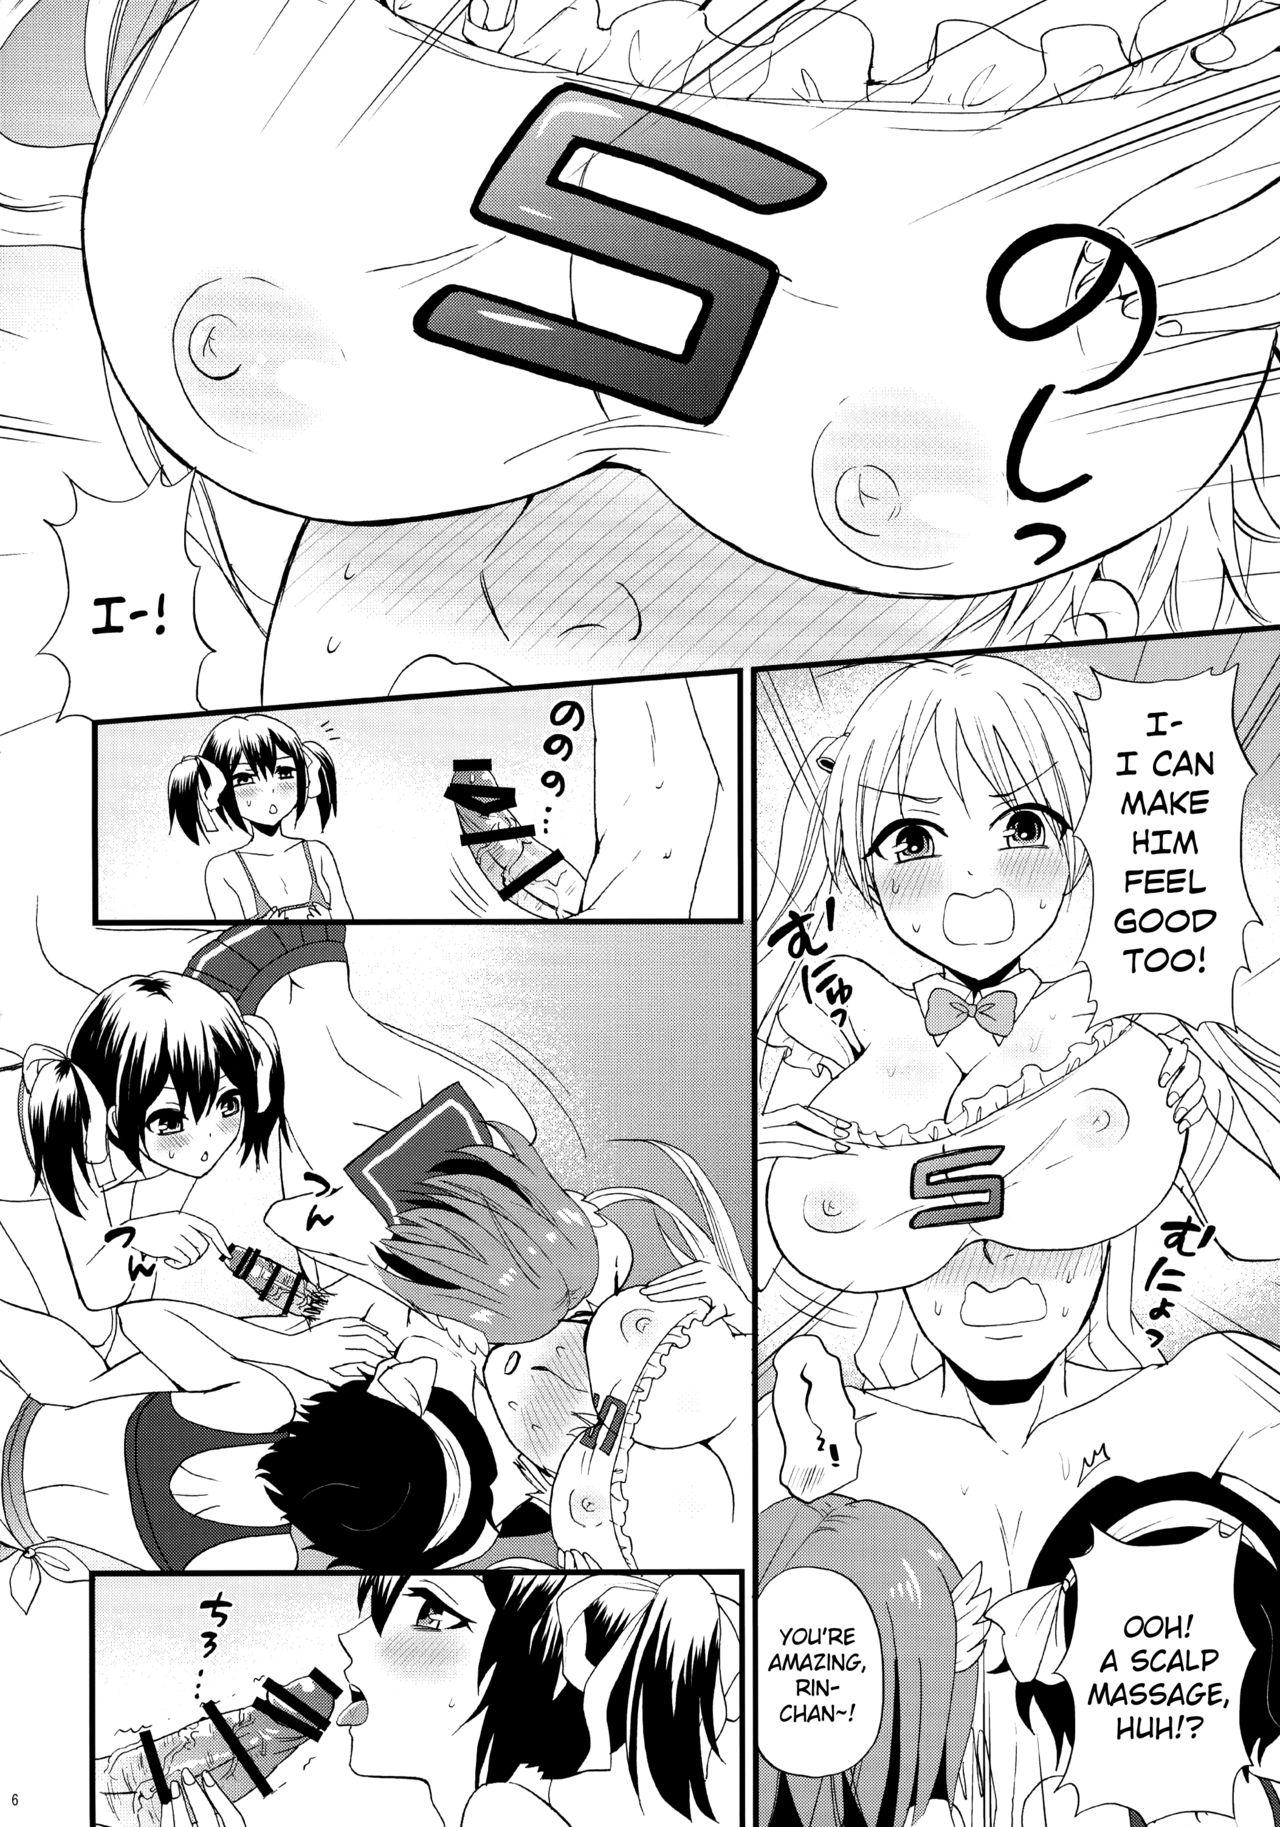 Slut Bike-bu no Omotenashi - Bakuon White Chick - Page 7